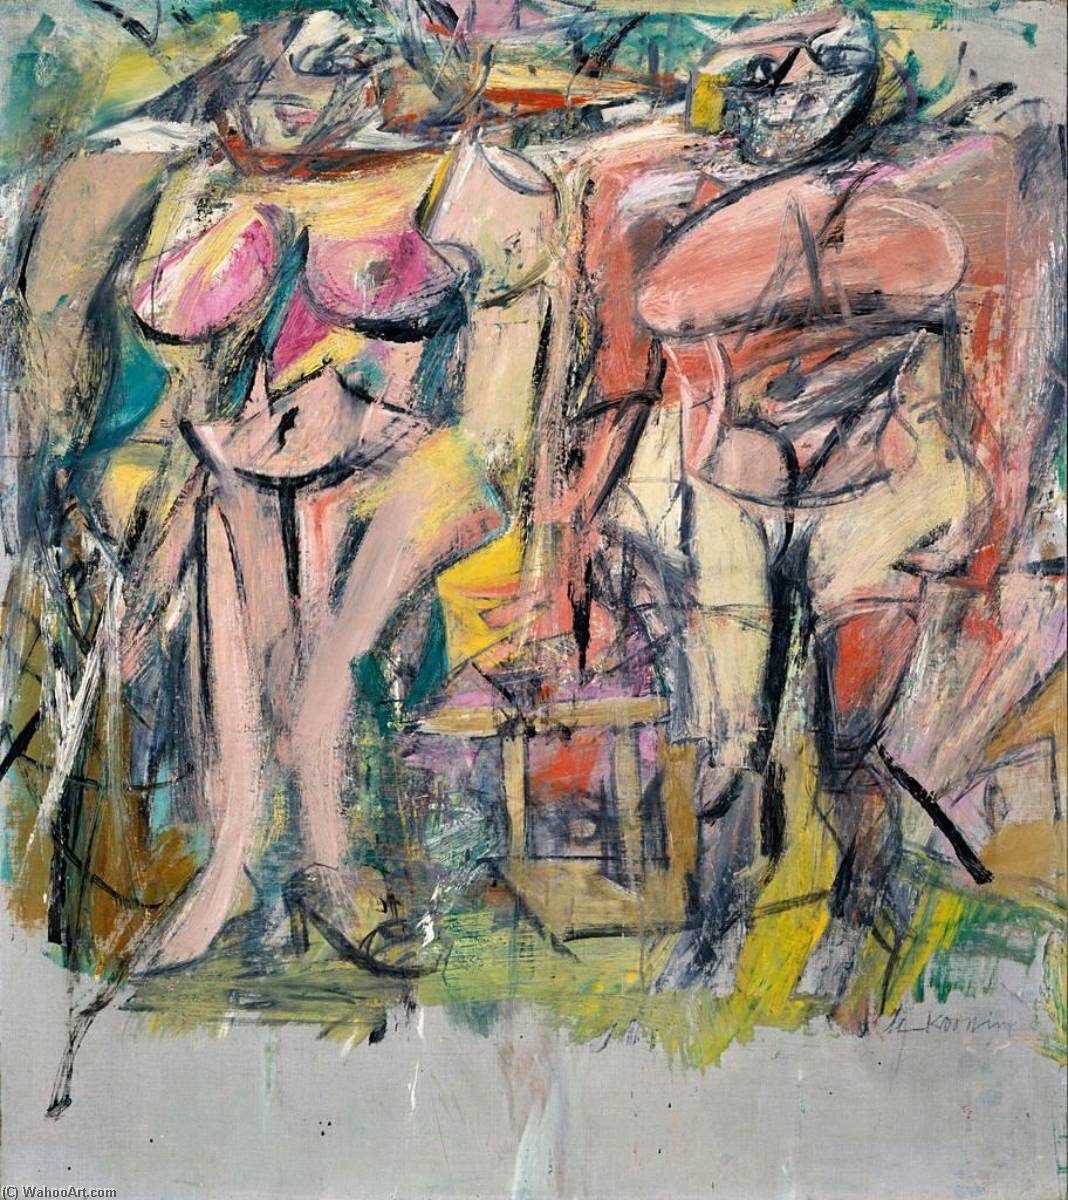 Acheter Reproductions D'art De Musée Deux femmes dans le pays, 1954 de Willem De Kooning (Inspiré par) (1904-1997, Netherlands) | ArtsDot.com